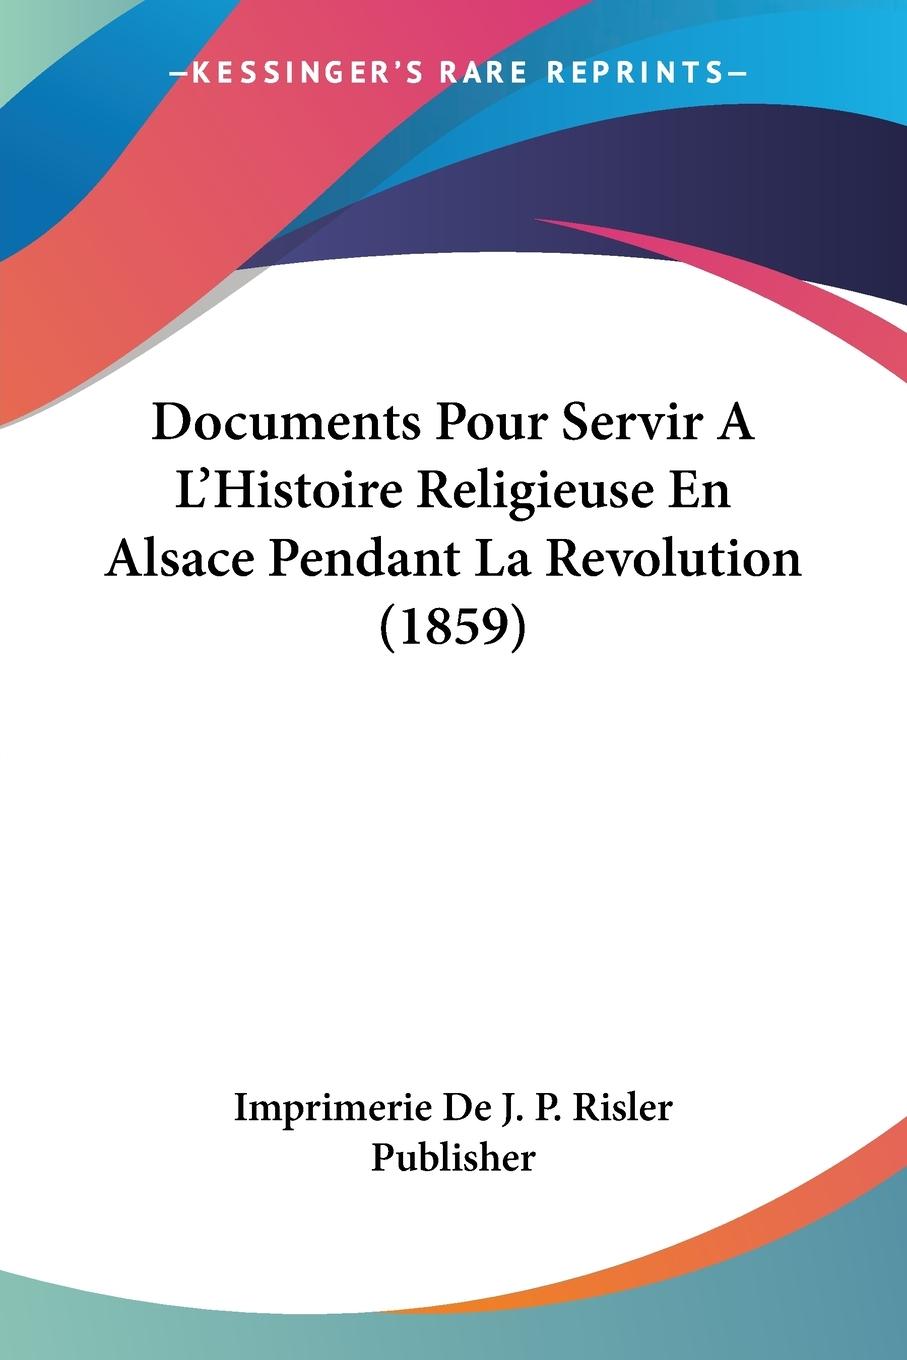 Documents Pour Servir A L Histoire Religieuse En Alsace Pendant La Revolution (1859) - Imprimerie De J. P. Risler Publisher